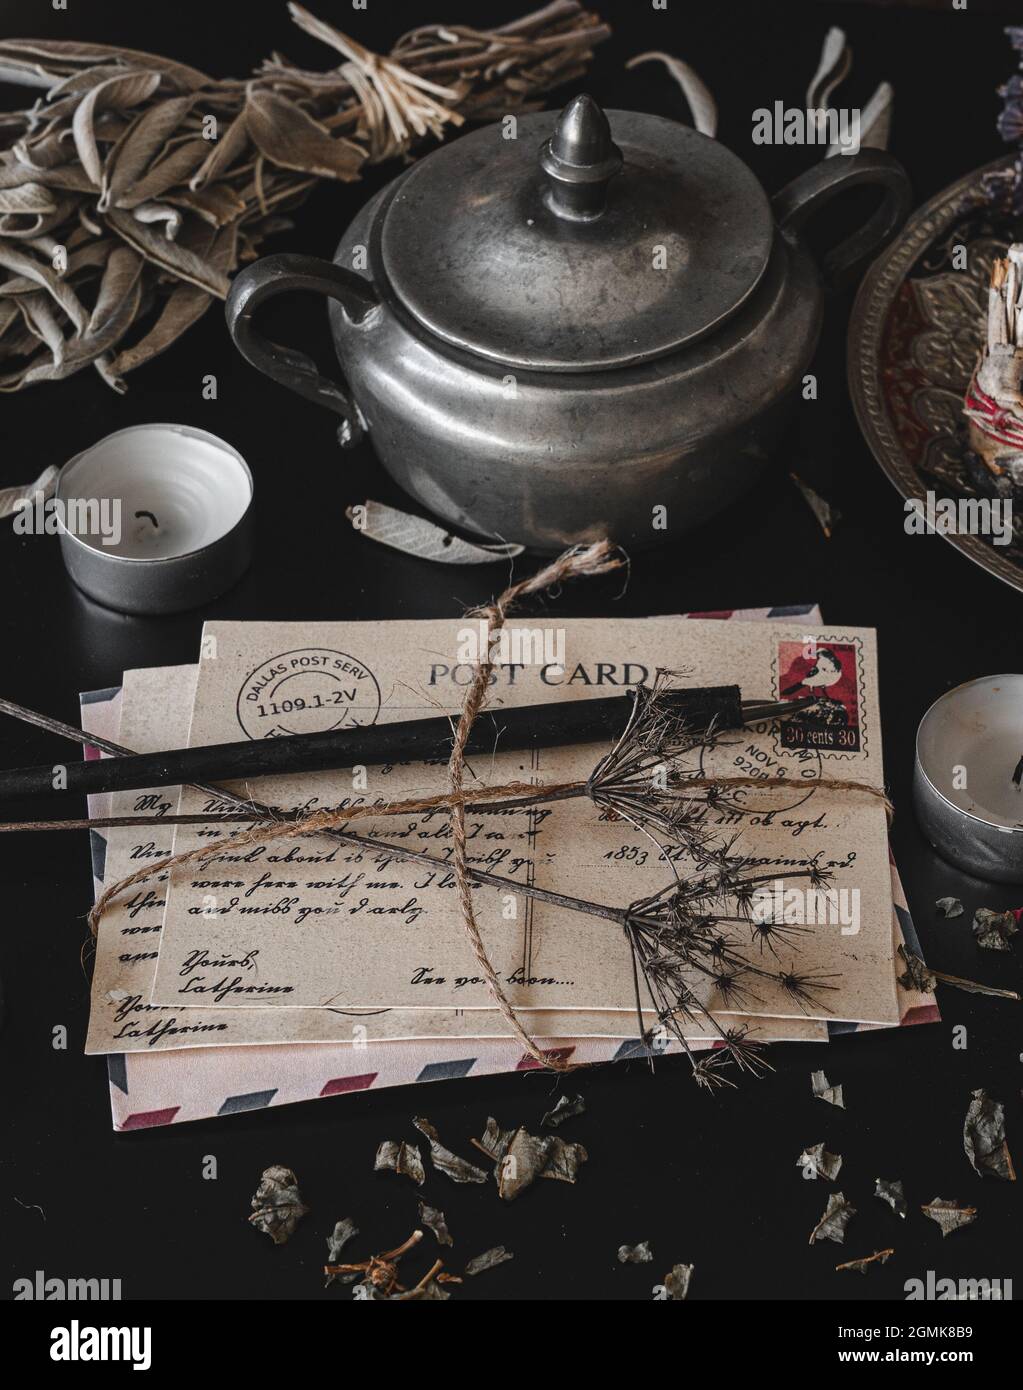 Altes, Vintage aussehendes Paket von Postkarten, handgeschrieben in Kursivschrift auf einem dunkelschwarzen unordentlichen Tisch. Getrocknete Wildblumen auf einem Brief. Vertikal Stockfoto